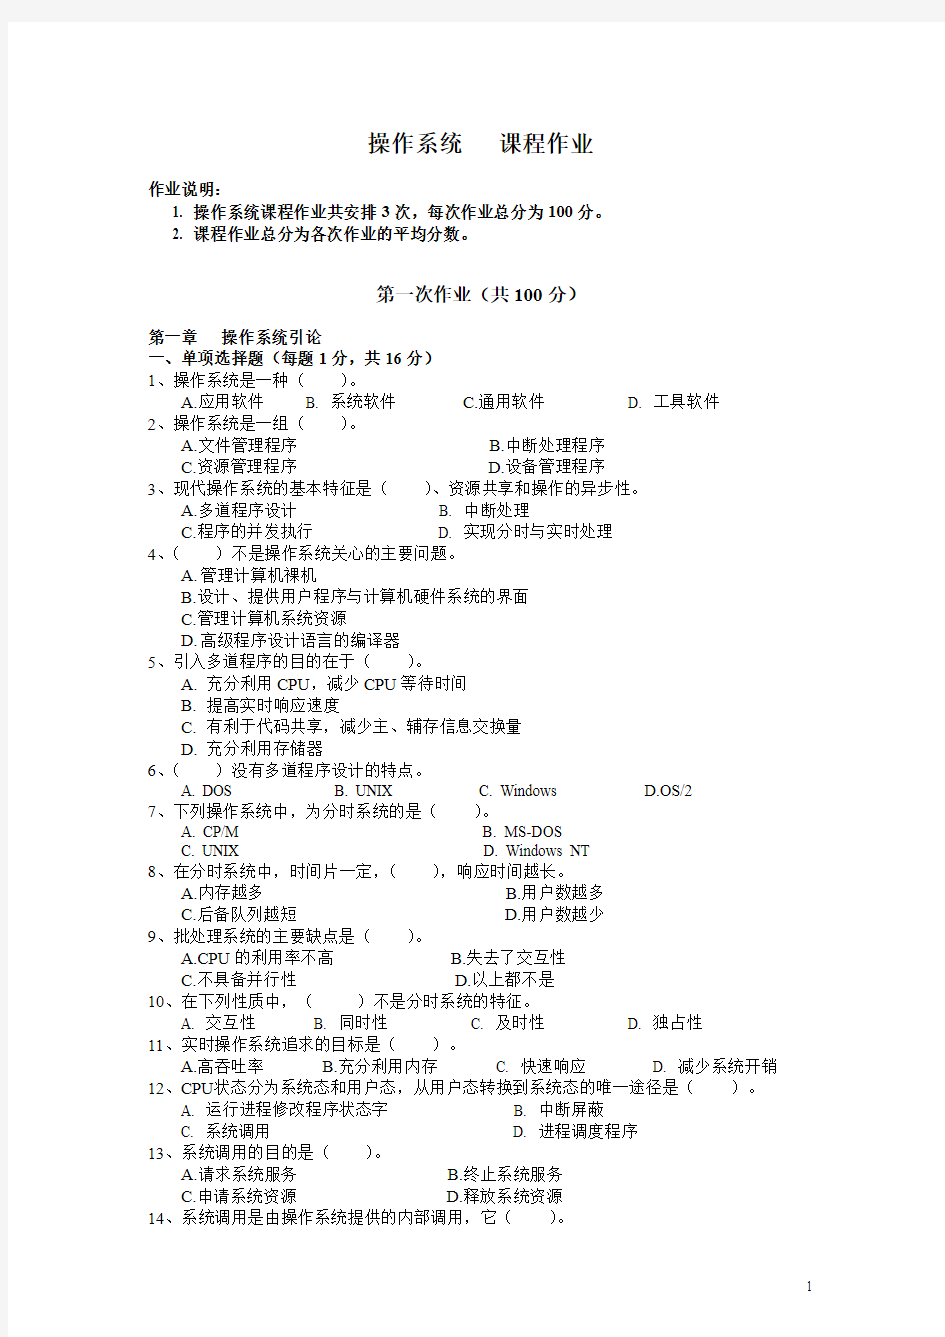 2014中央电大操作系统作业参考答案 (2).